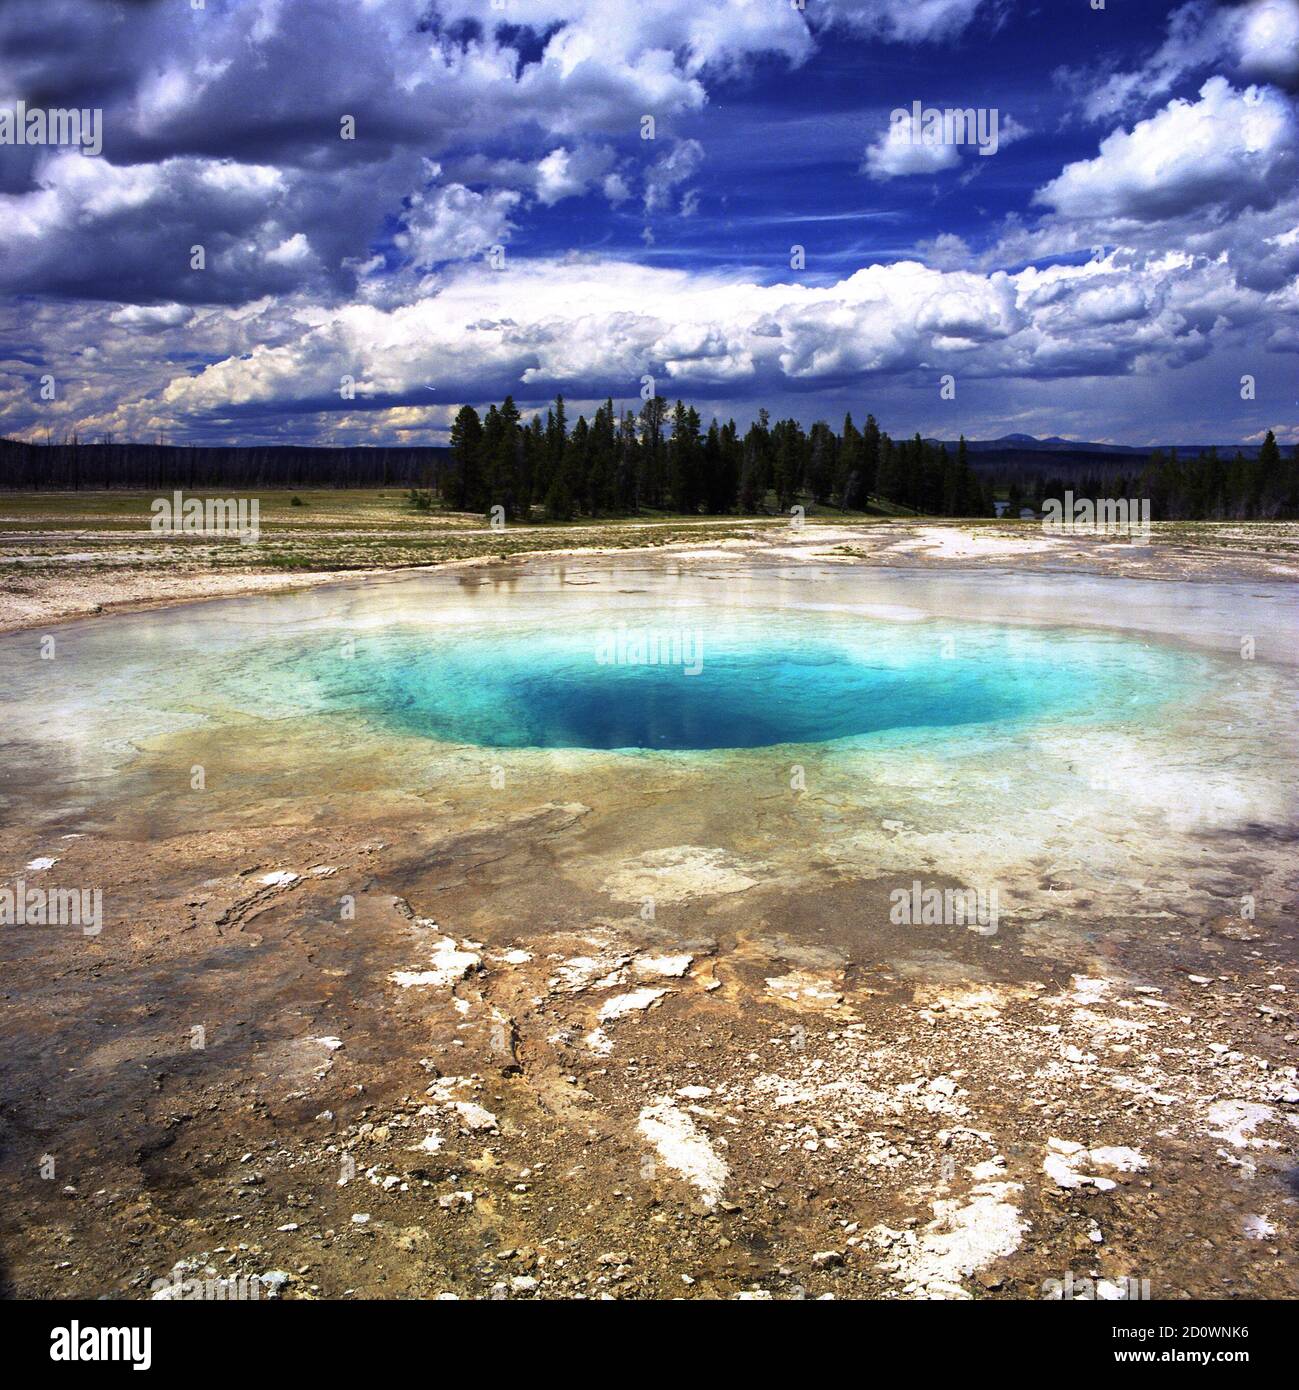 Opal Pool im Yellowstone Nationalpark. Dieses geologische Phänomen zeigt die erstaunliche Schönheit dieser landschaftlichen Naturschönheit. Stockfoto